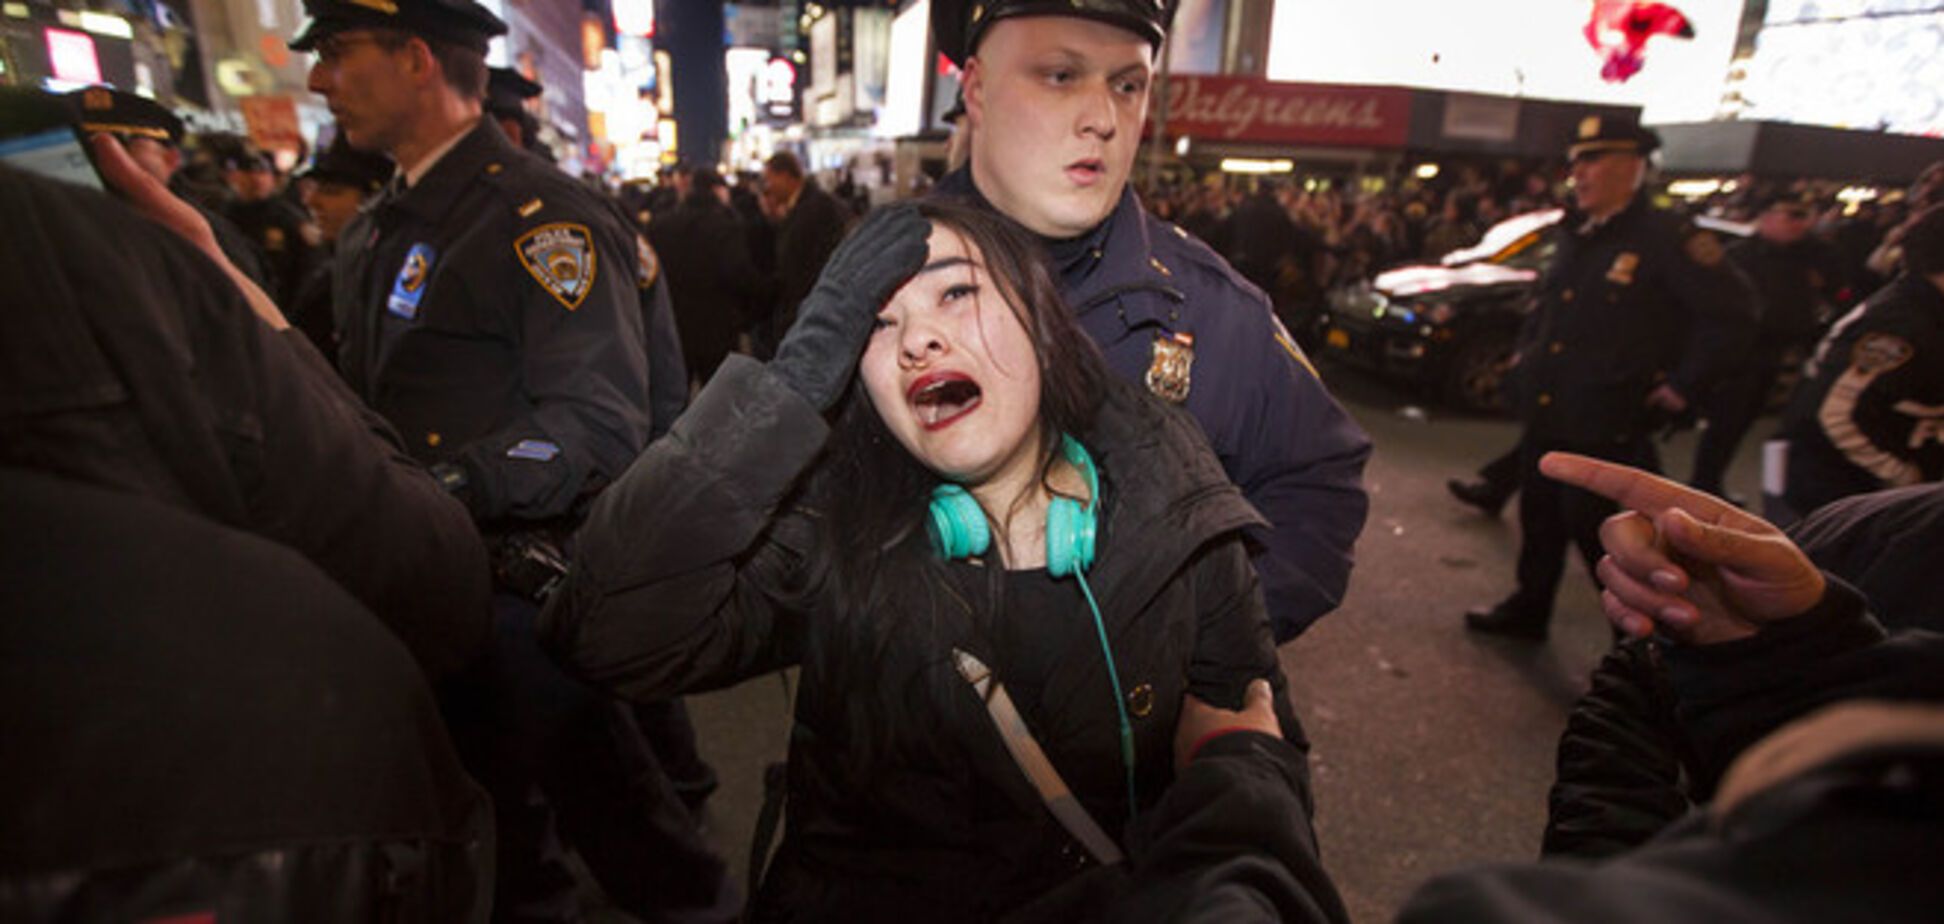 В Нью-Йорке арестованы десятки митингующих против убийства афроамериканца полицией: опубликованы фото